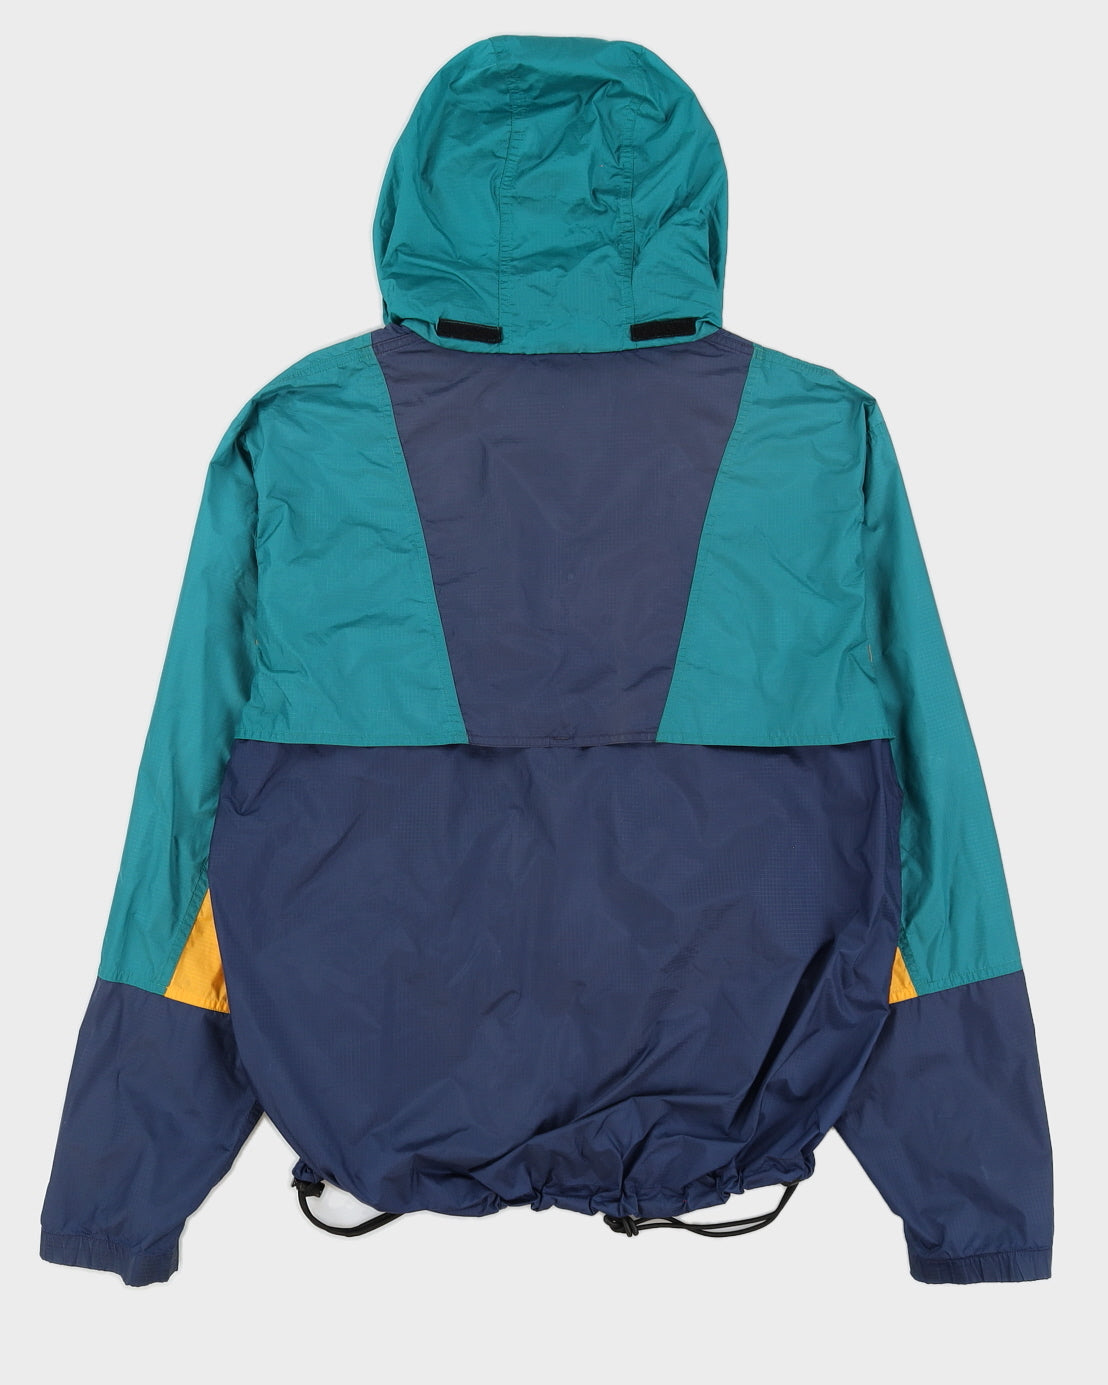 Vintage 90s The North Face Ski Jacket - L